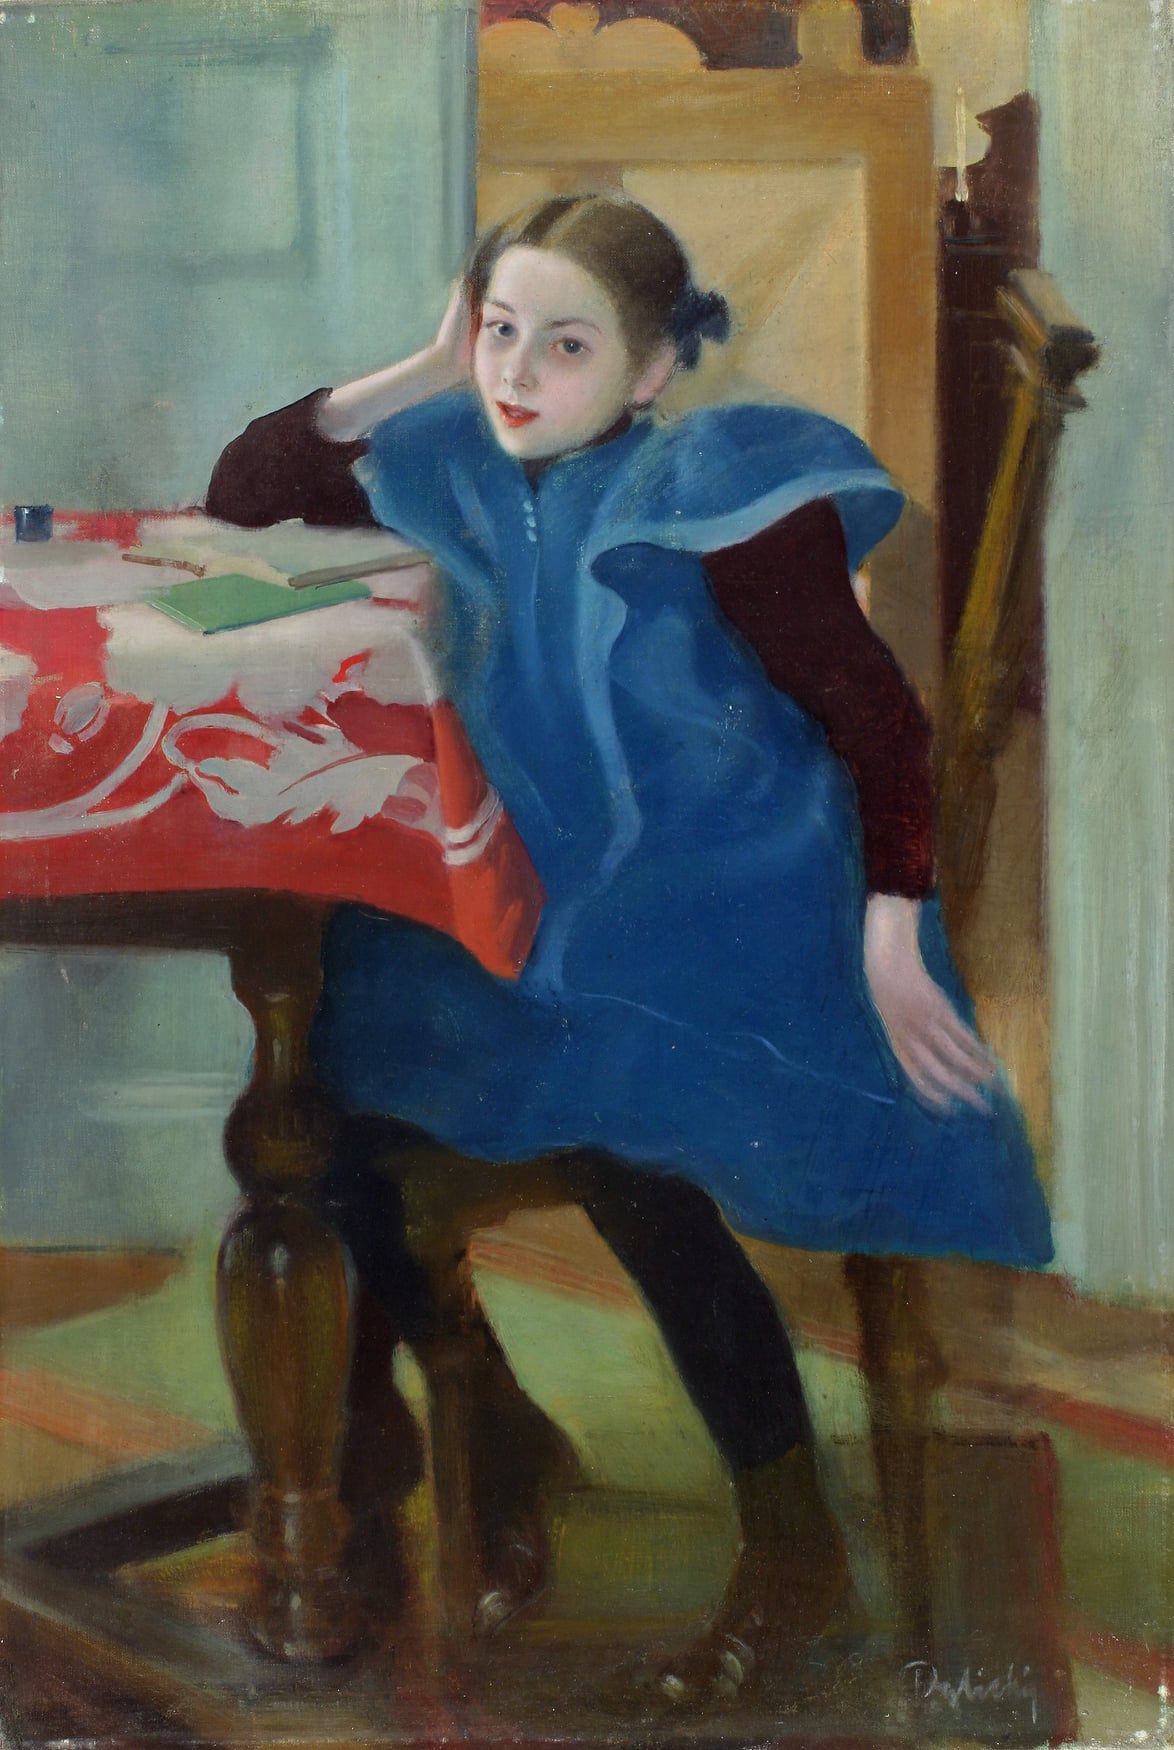 Stanisław Dębicki, Dziewczynka przy lekcji, 1910–1912